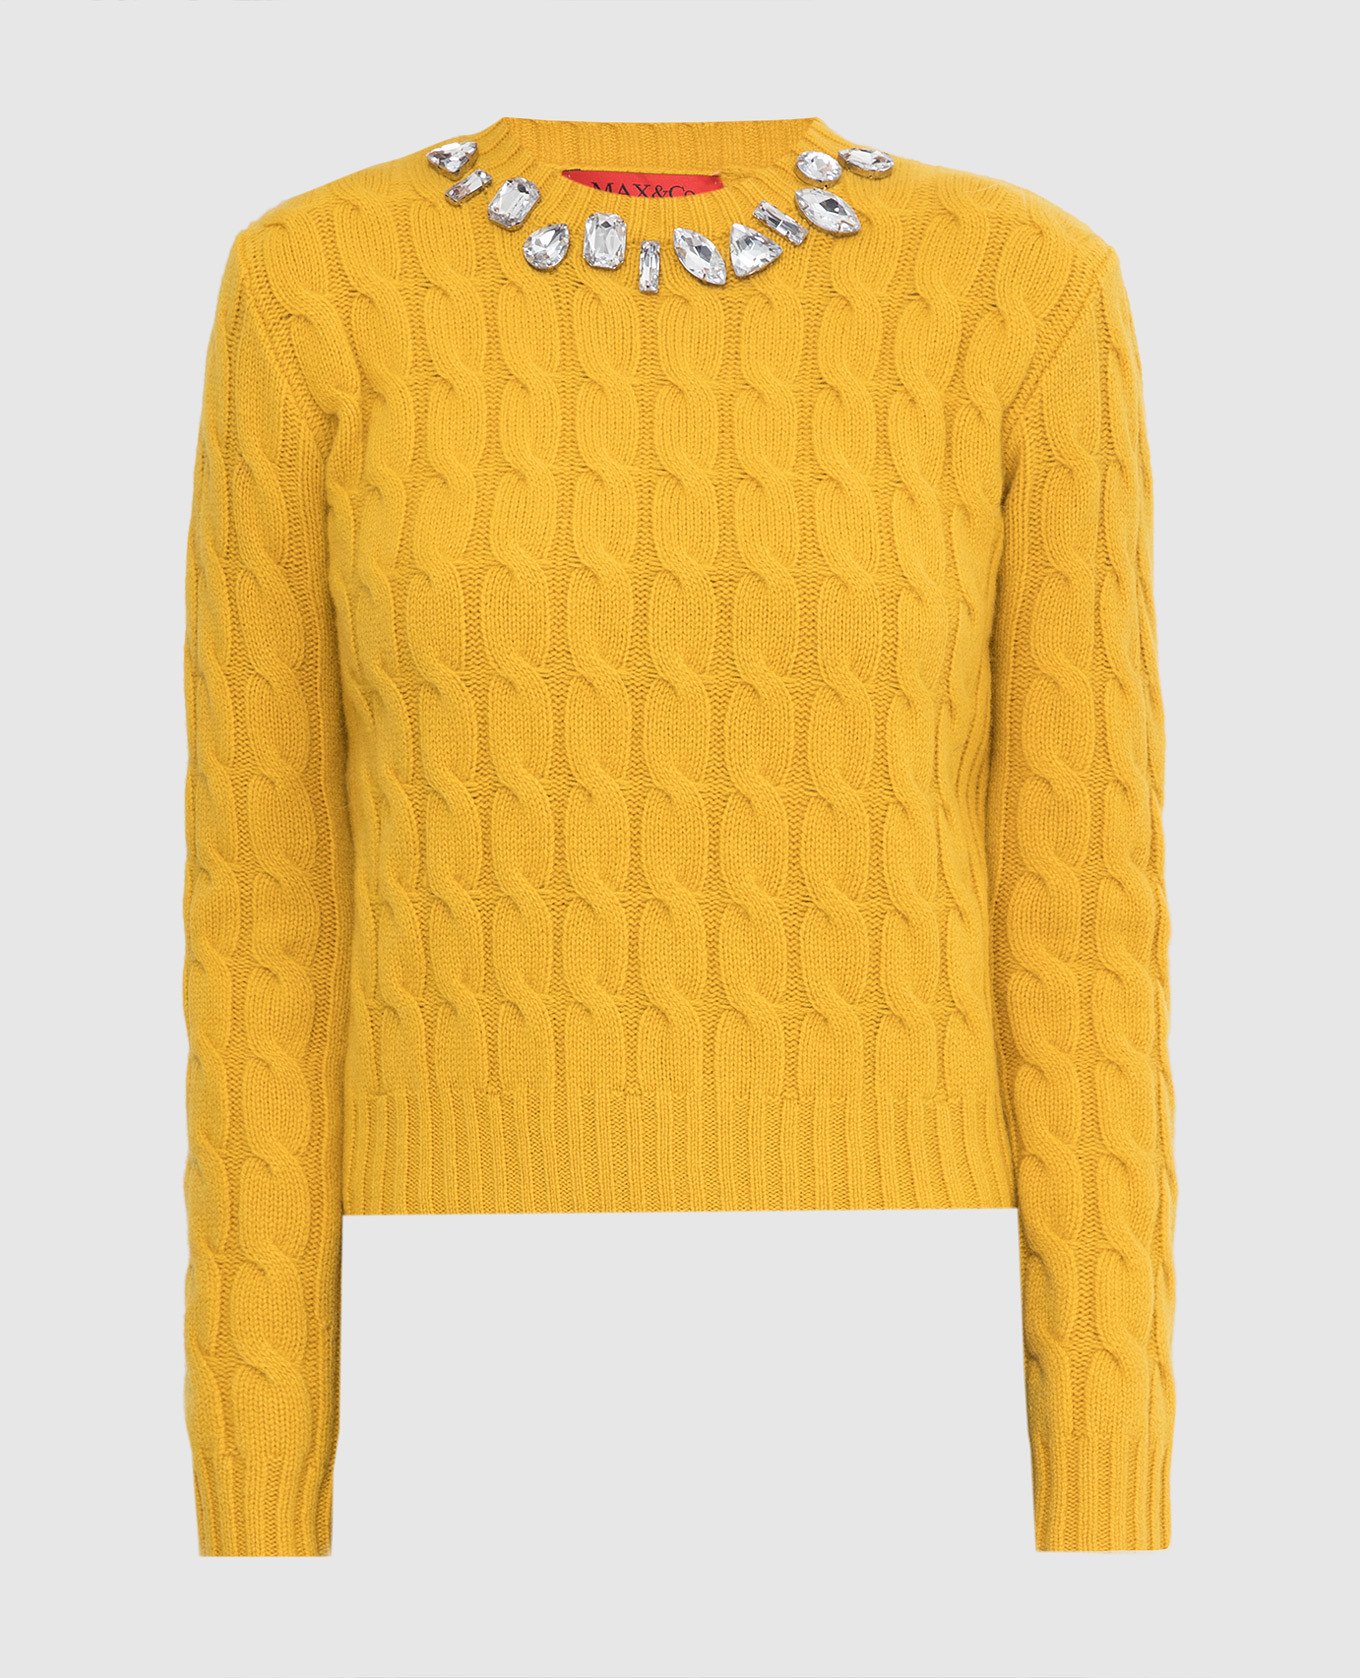 Желтый свитер Sceriffo из шерсти с кристаллами